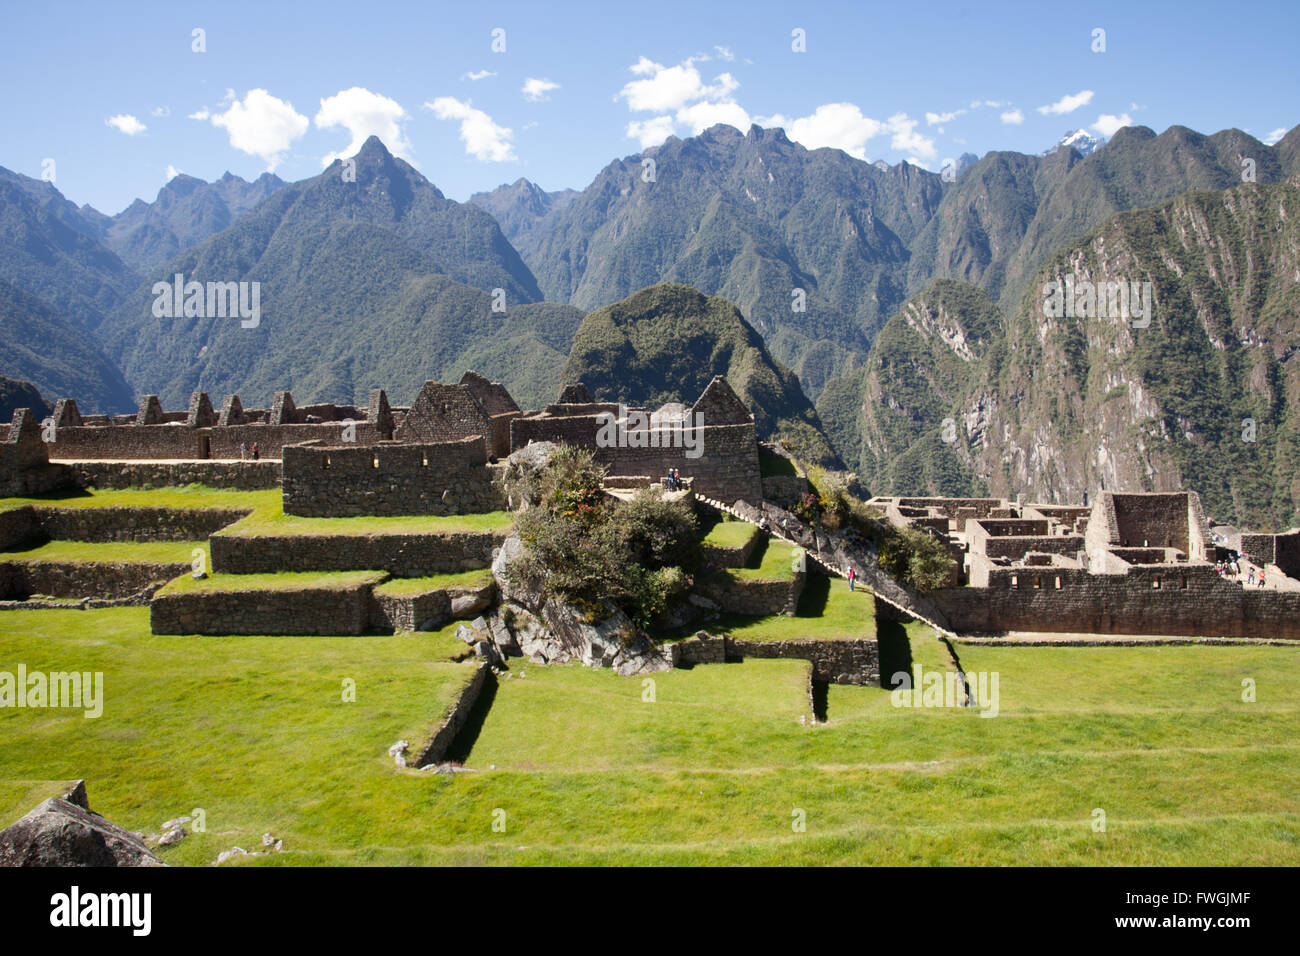 Peru, Cusco Region, Urubamba Province, Machu Picchu, Elevated View Of Grassy Terraces Stock Photo